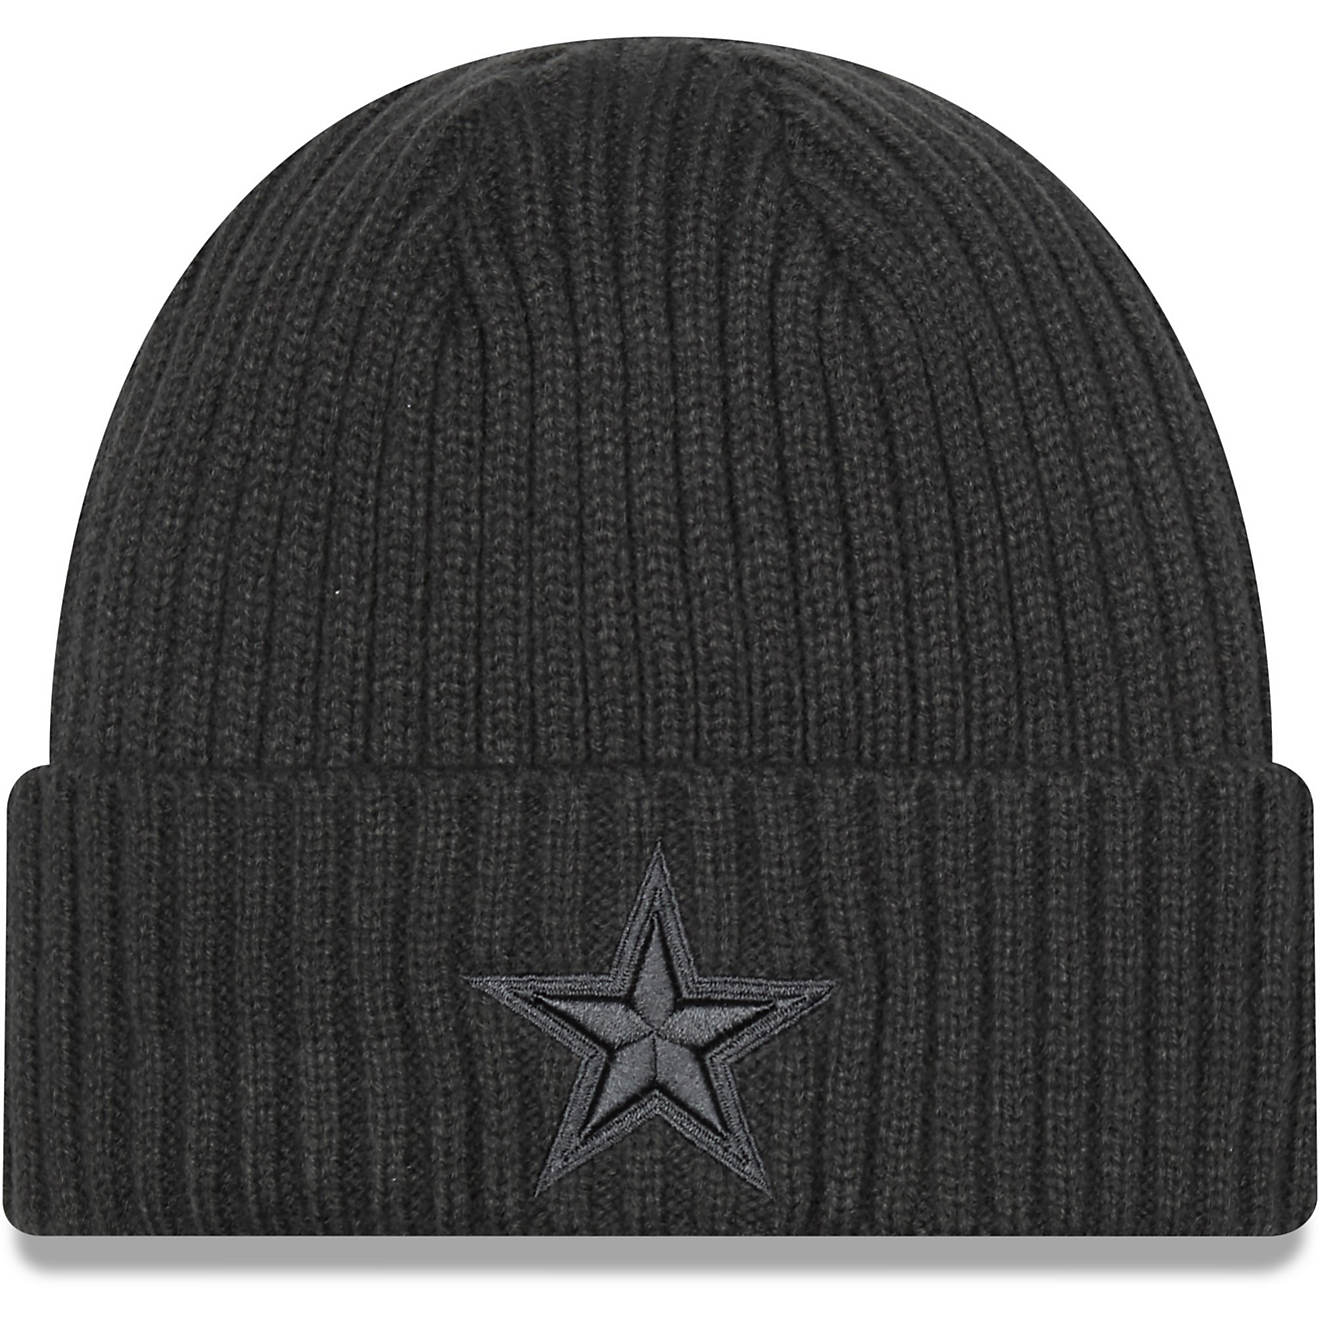 New Era Men's Dallas Cowboys Core Classic Knit Hat